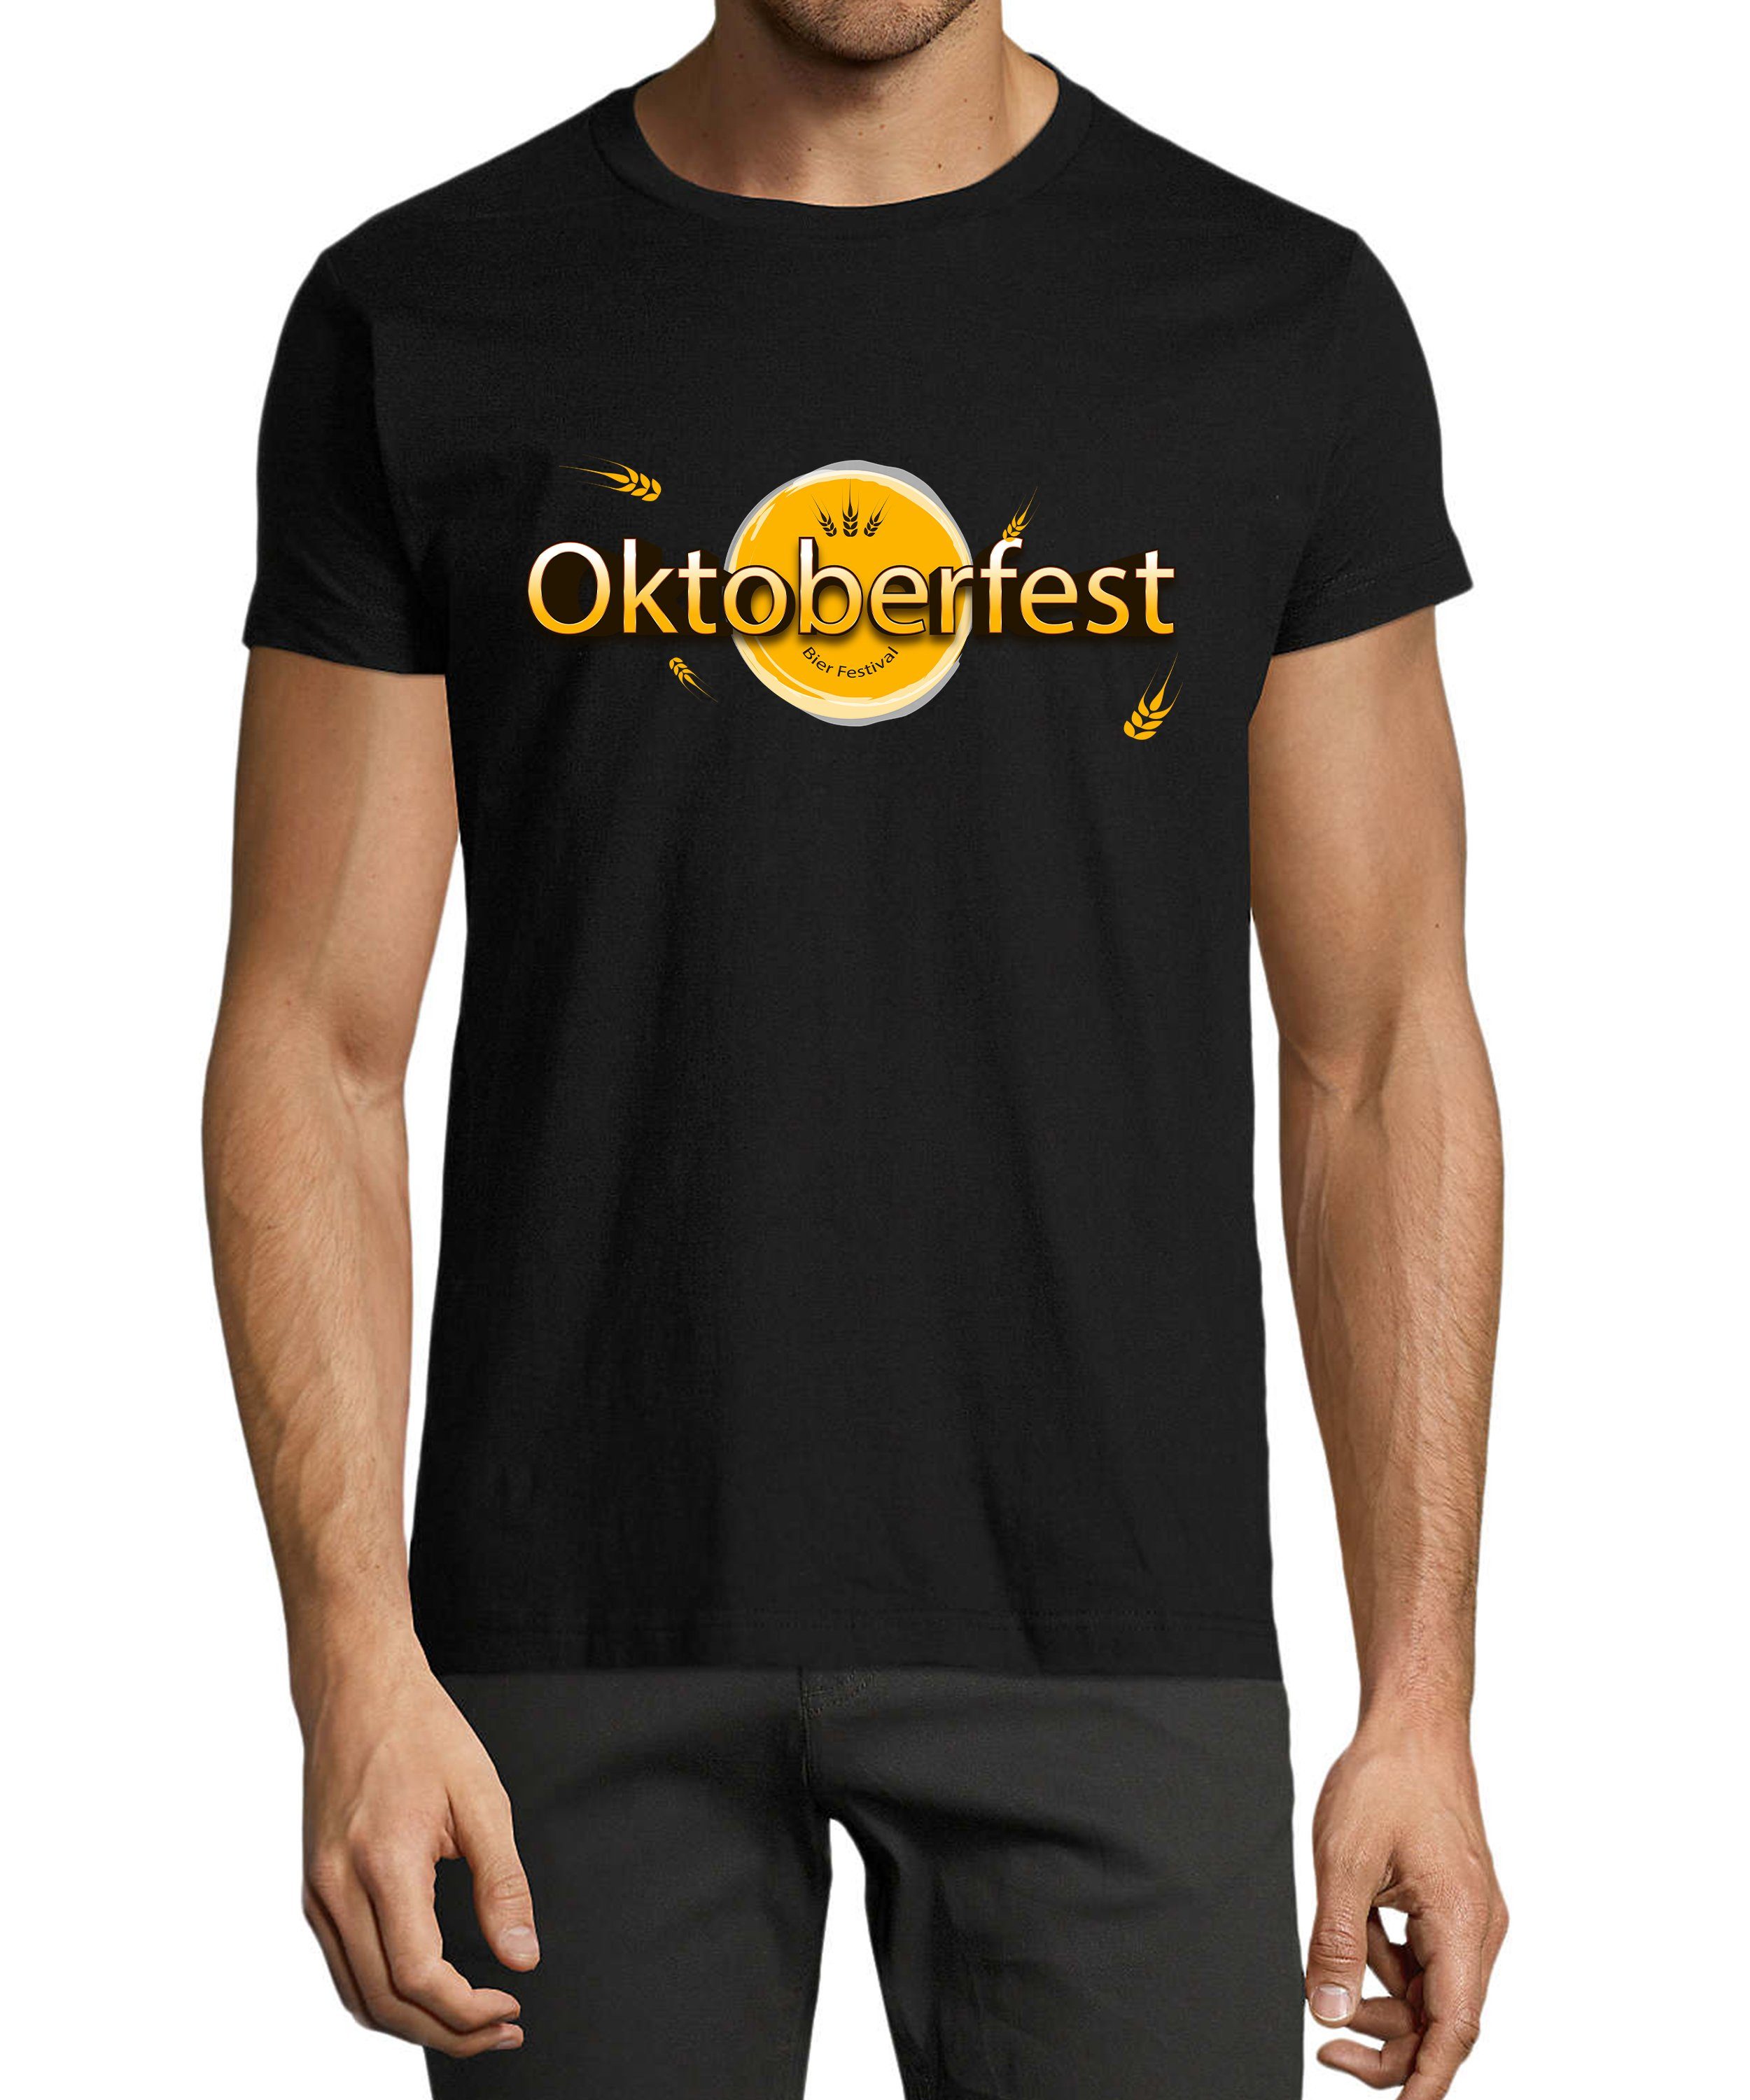 MyDesign24 T-Shirt Herren Party Shirt - Trinkshirt Oktoberfest T-Shirt Bier Festival Baumwollshirt mit Aufdruck Regular Fit, i325 schwarz